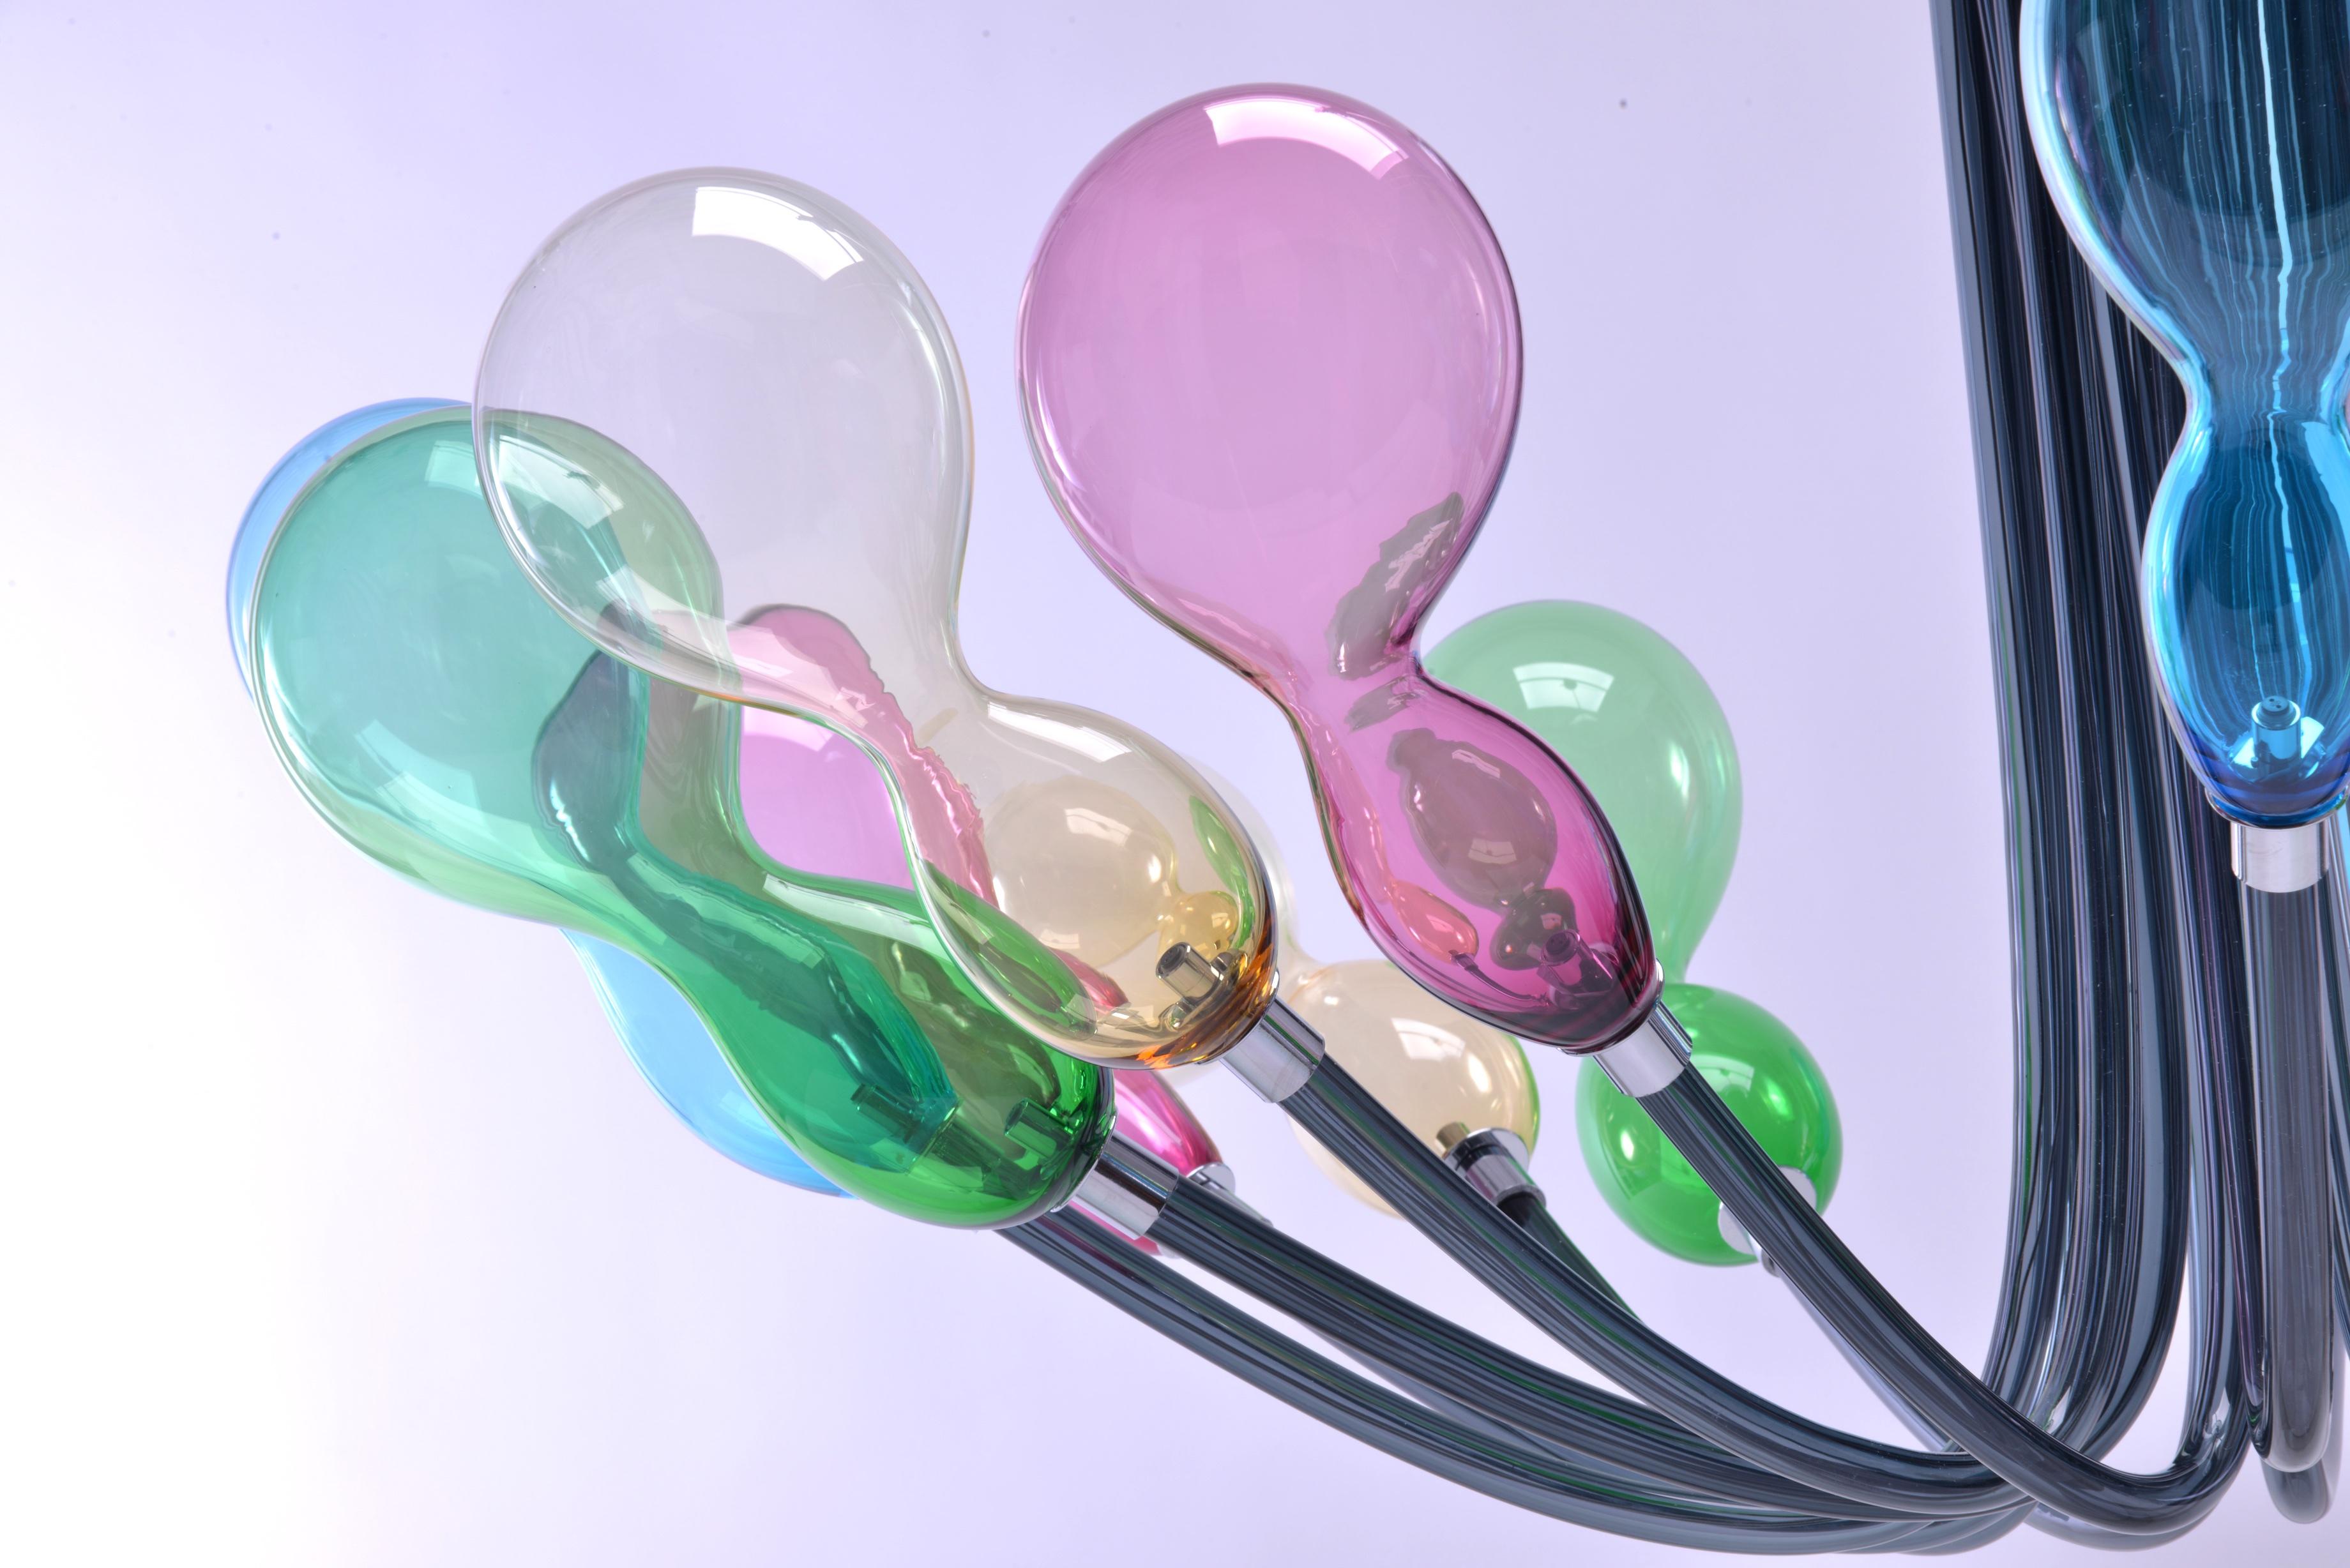 21. Jahrhundert Karim Rashid Kronleuchter Blob 12-Licht Muranoglas verschiedenen Farben.
Die Beleuchtungselemente von Blob scheinen wie Lichtballons in der Luft zu schweben, ein frischer Look für diesen Kronleuchter der neuen Generation, der von